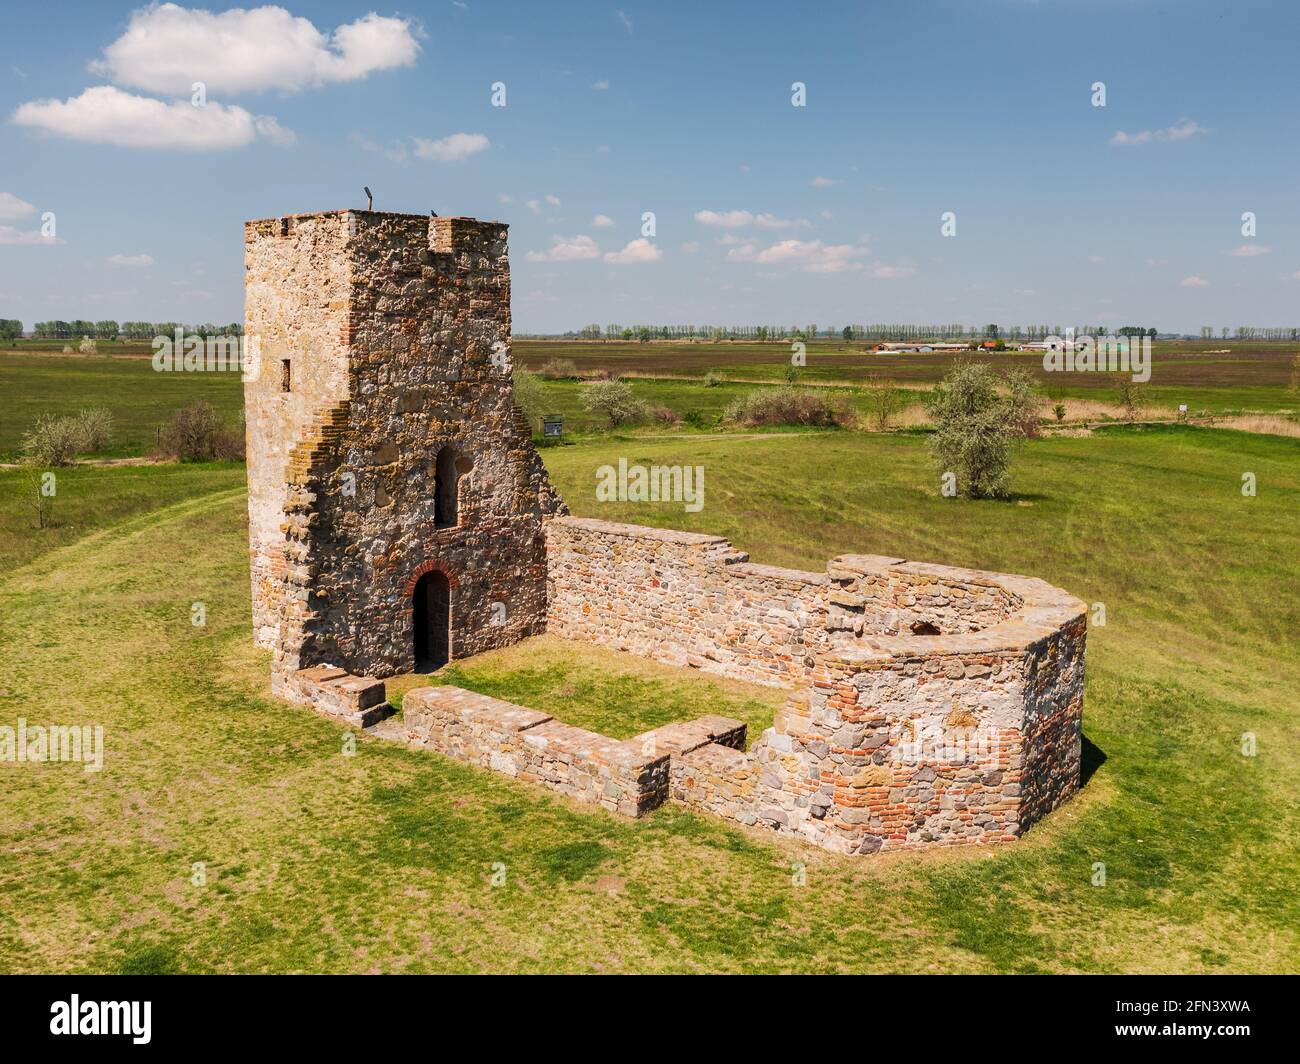 La tour Csonka est un monument ancien dans le sud de la Hongrie. Construit environ 11ème siècle. Pas trop célèbre mais un endroit intéressant au milieu de la région d'Alfold. Banque D'Images